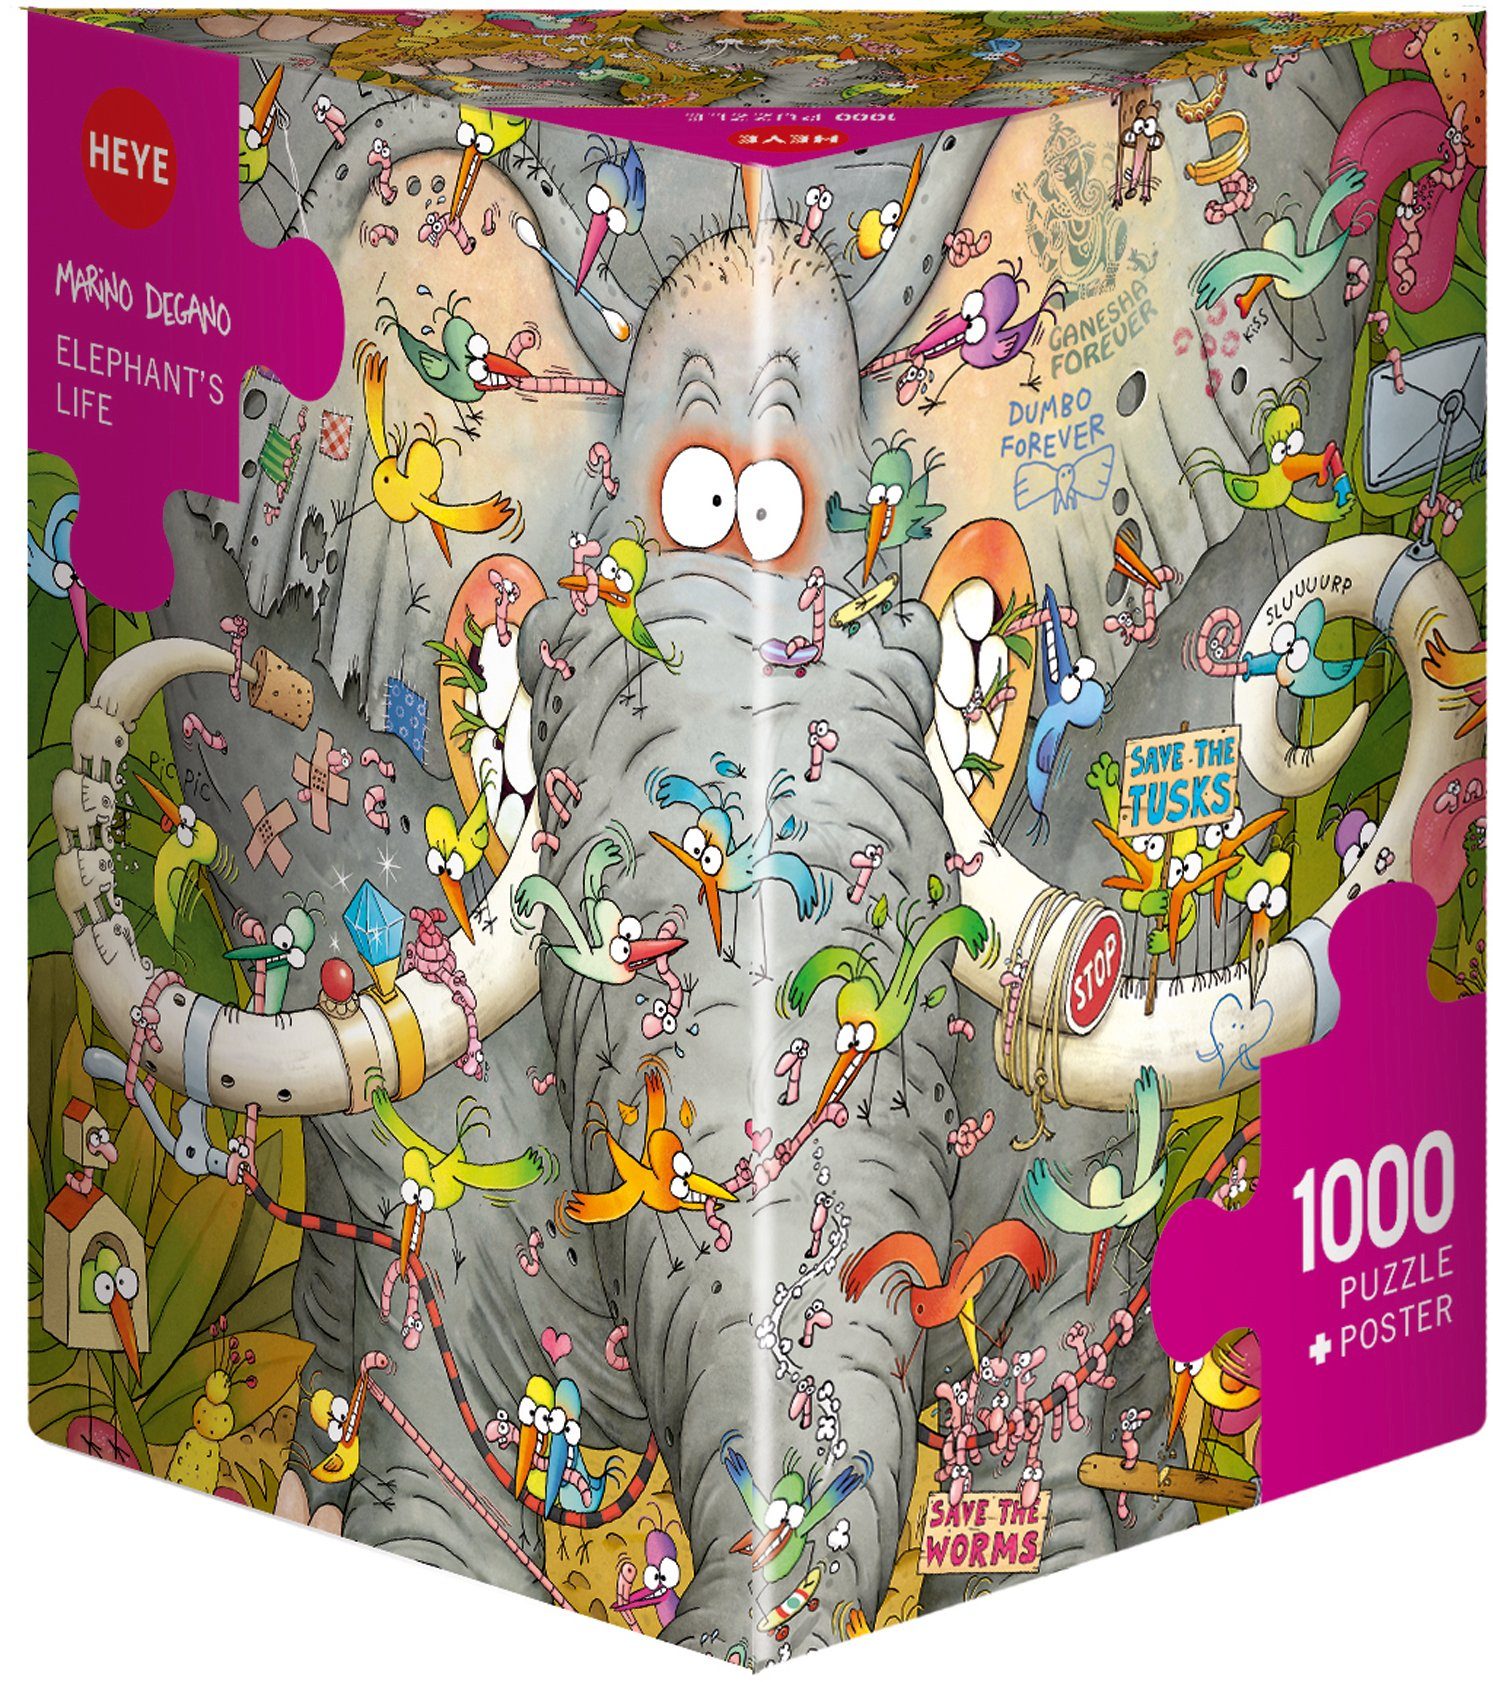 Puzzleteile, Made Degano, Life, Europe in Puzzle Elephant's HEYE 1000